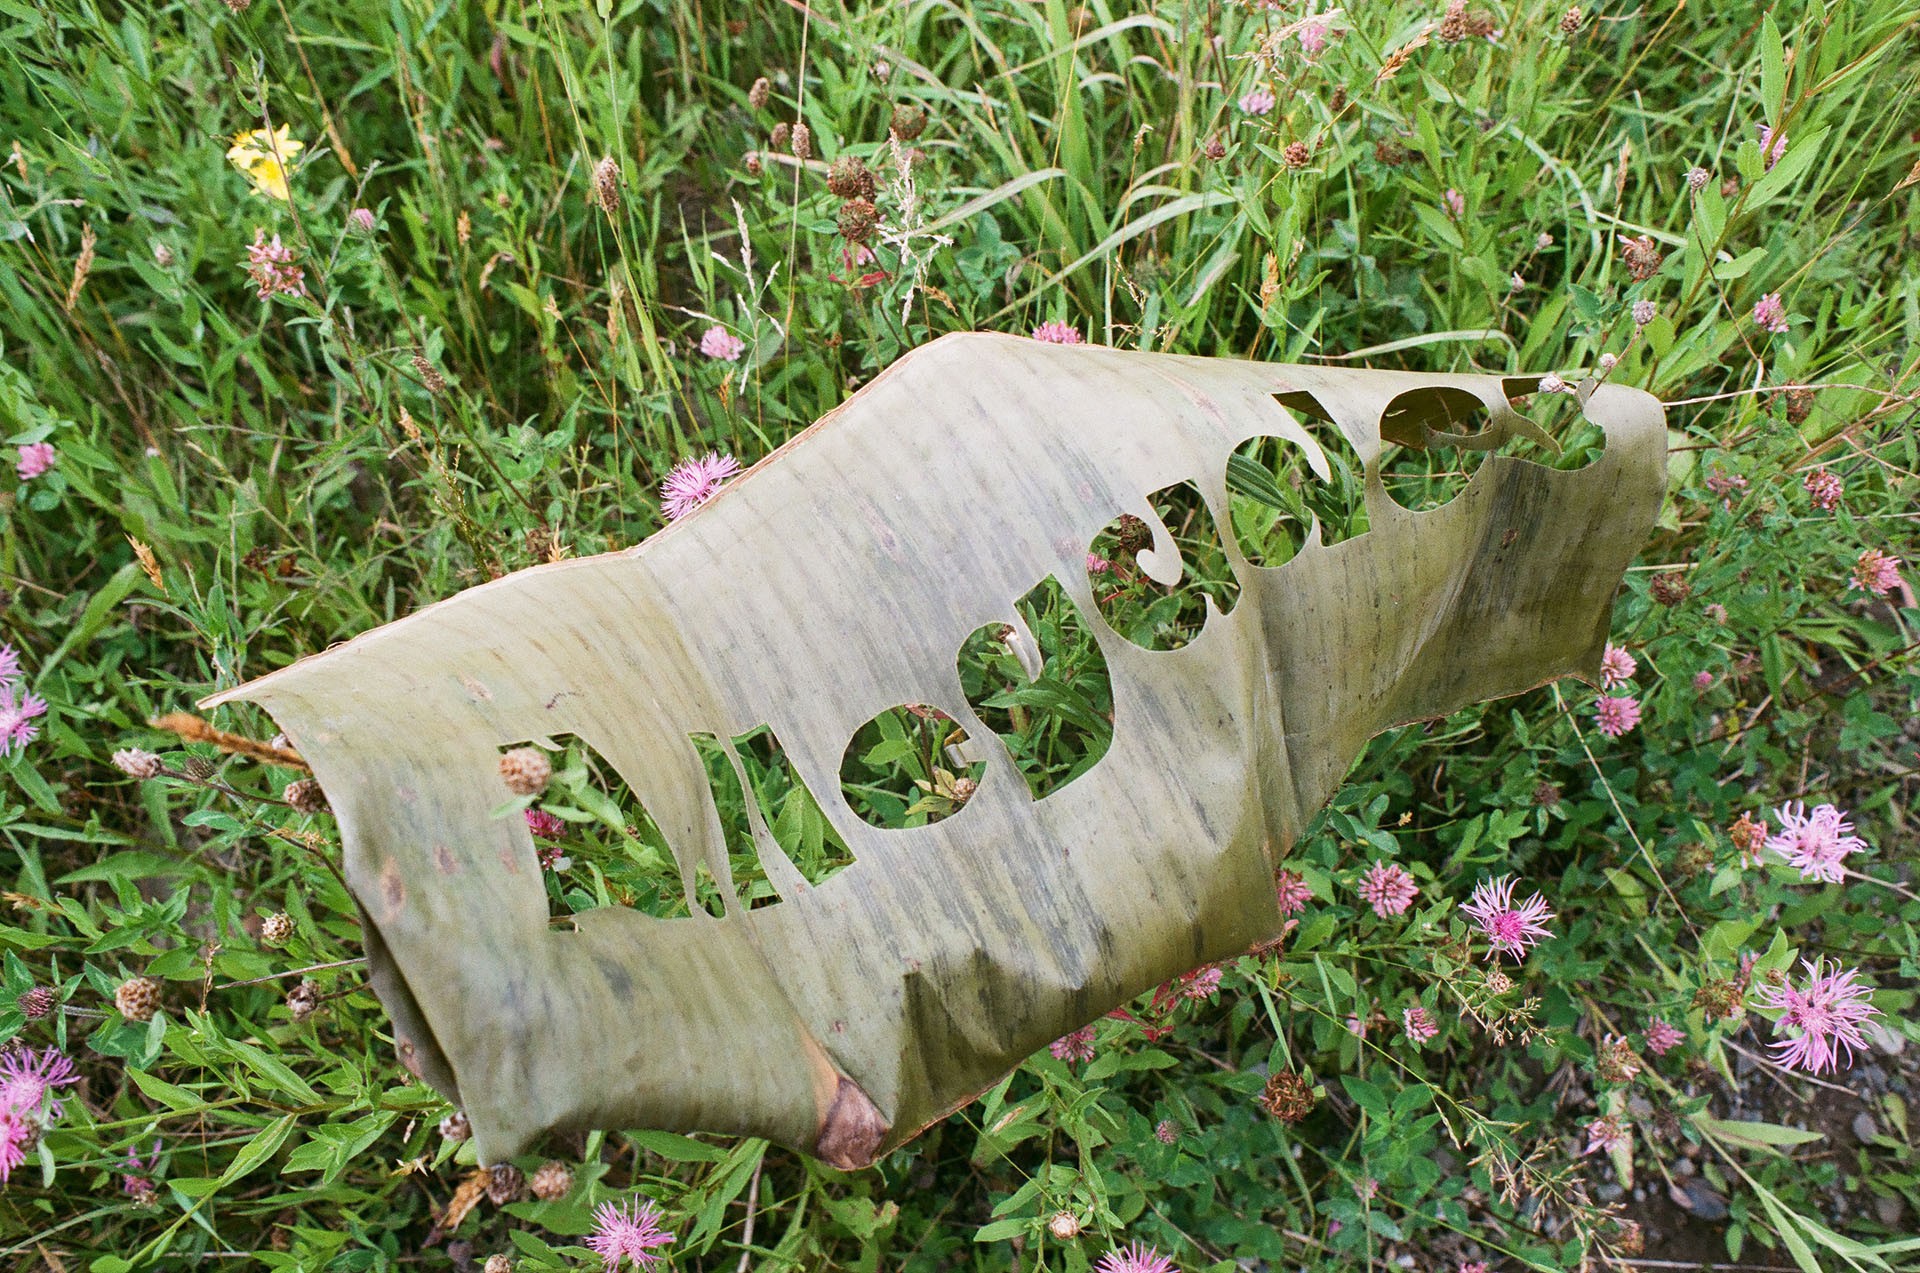 Feuille de plantain découpée au laser avec le titre de l'exposition A.Ilegades reposant sur un champ de fleurs roses sauvages